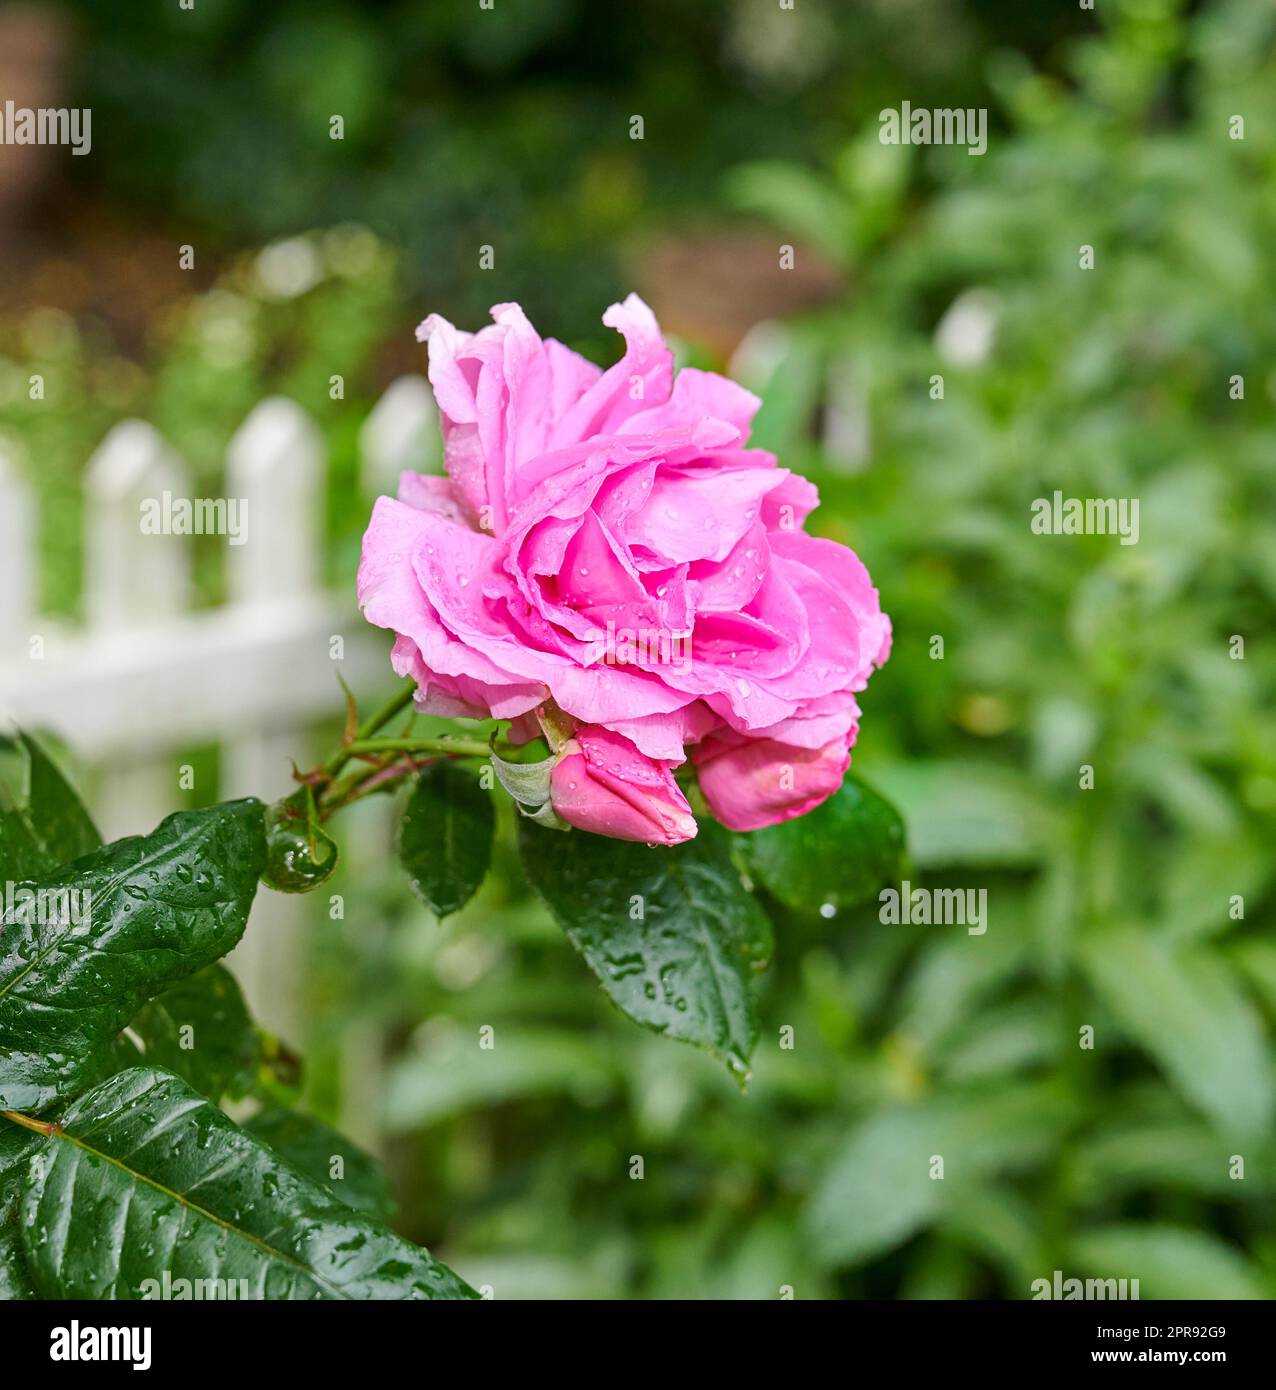 Un détail d'une rose dans le jardin. Fleur rose macro avec gouttes d'eau sur les feuilles vert foncé. Une seule fleur sur fond de verdure et une clôture de piquetage blanche Banque D'Images